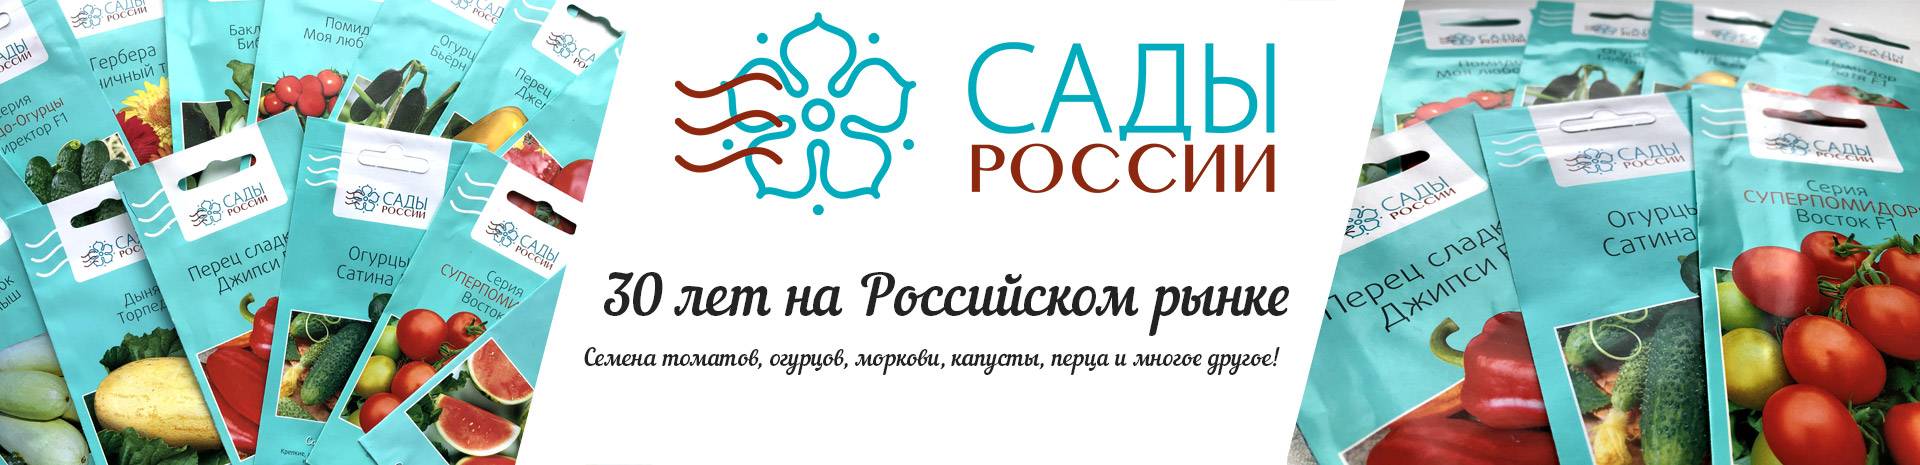 Подскажите добросовестные интернет-магазины поставки семян и саженцев / асиенда.ру